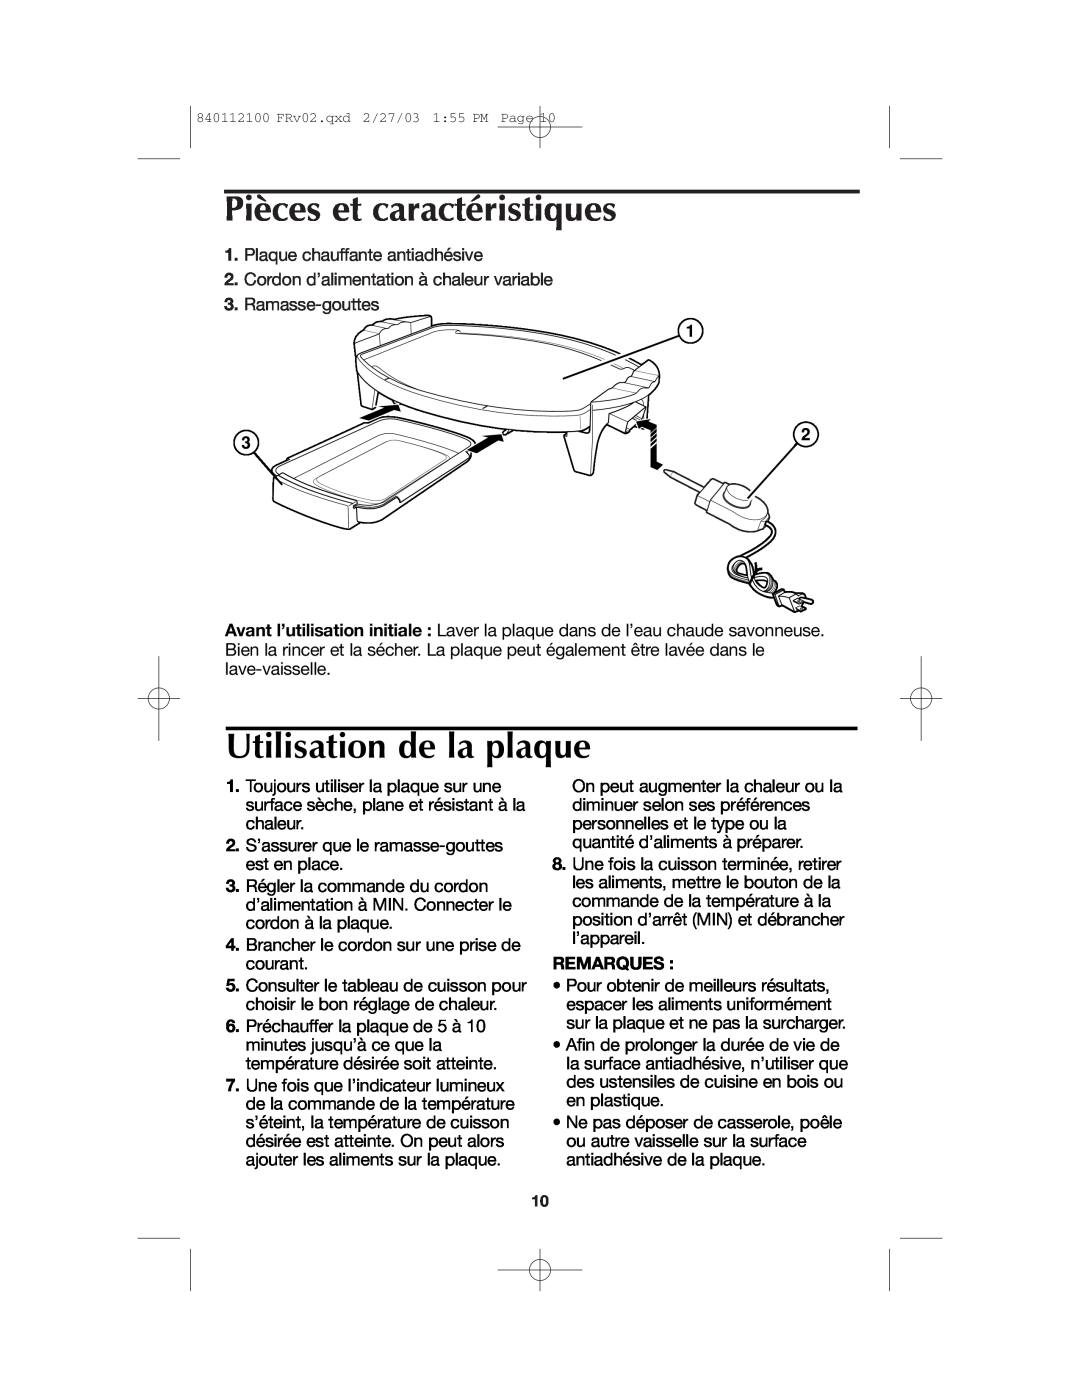 Proctor-Silex 840112100 manual Pièces et caractéristiques, Utilisation de la plaque, Remarques 